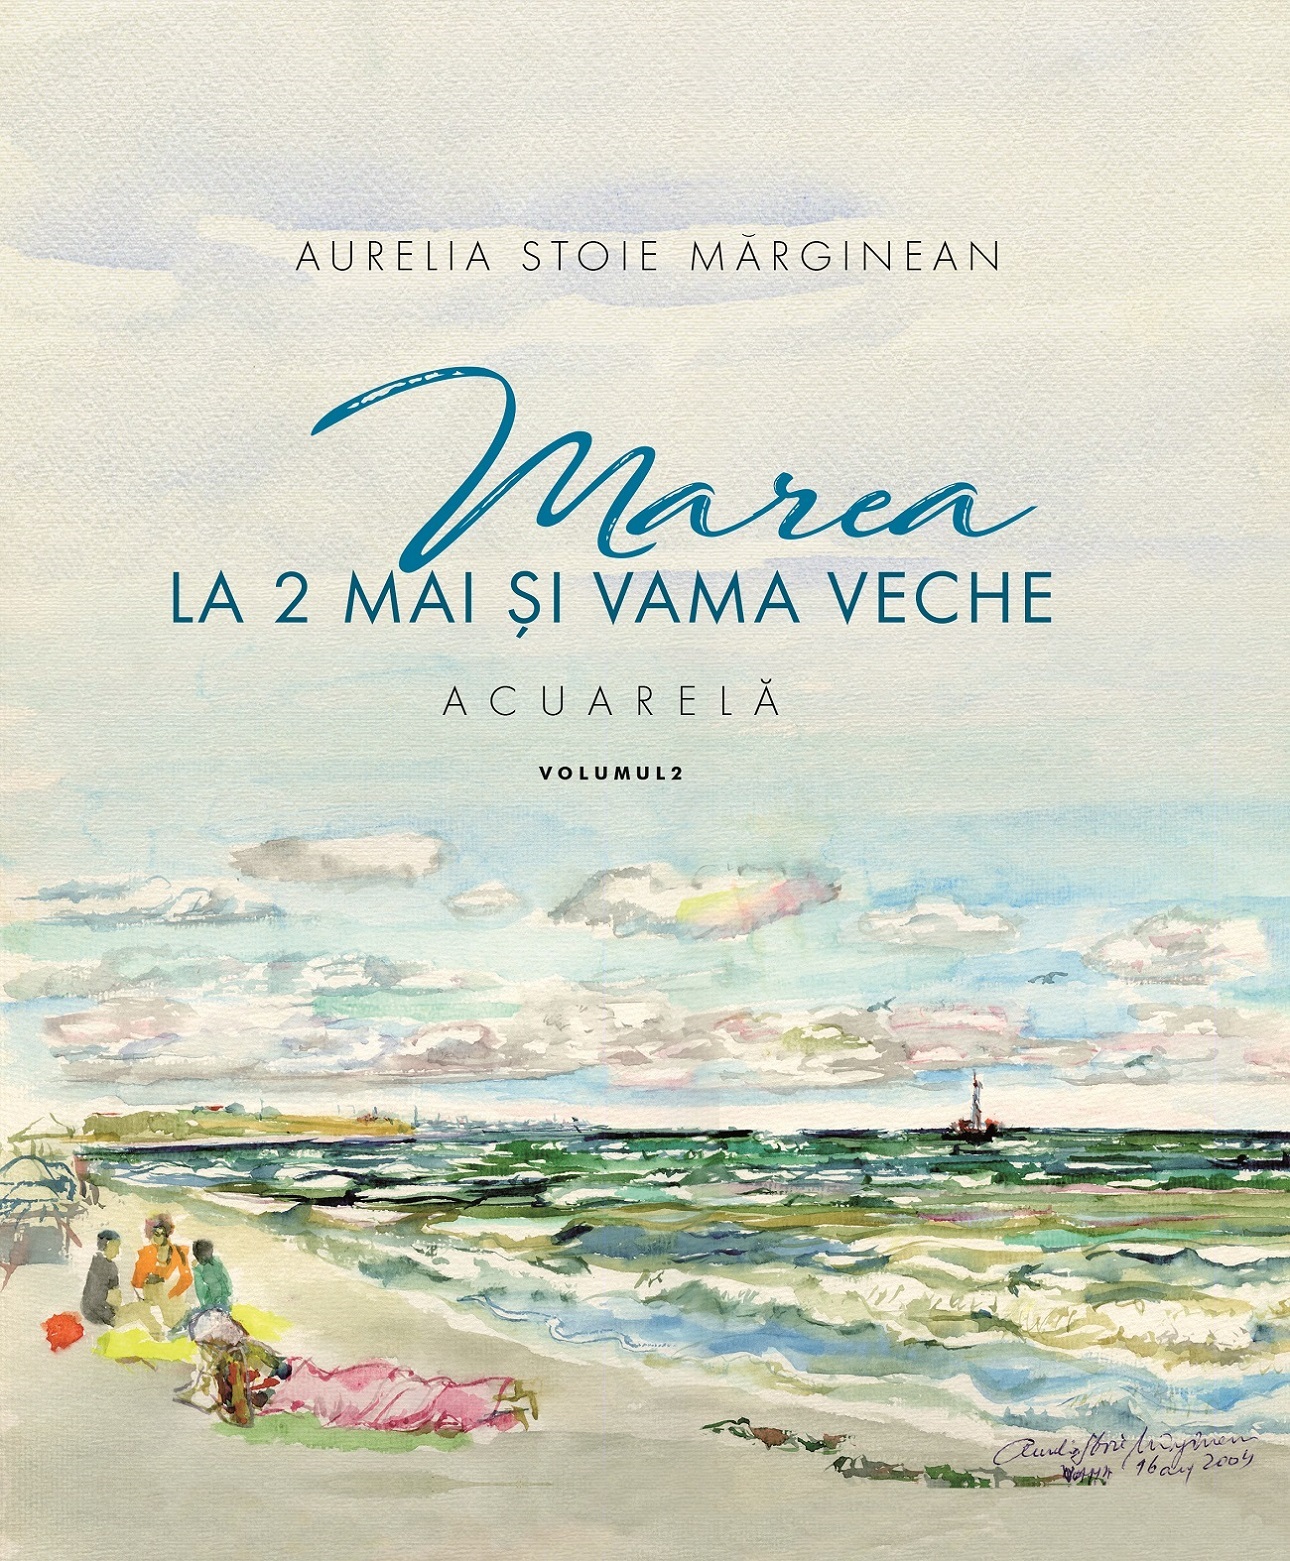 Marea la 2 Mai si Vama Veche Vol.2 | Aurelia Stoie Marginean carturesti.ro poza bestsellers.ro